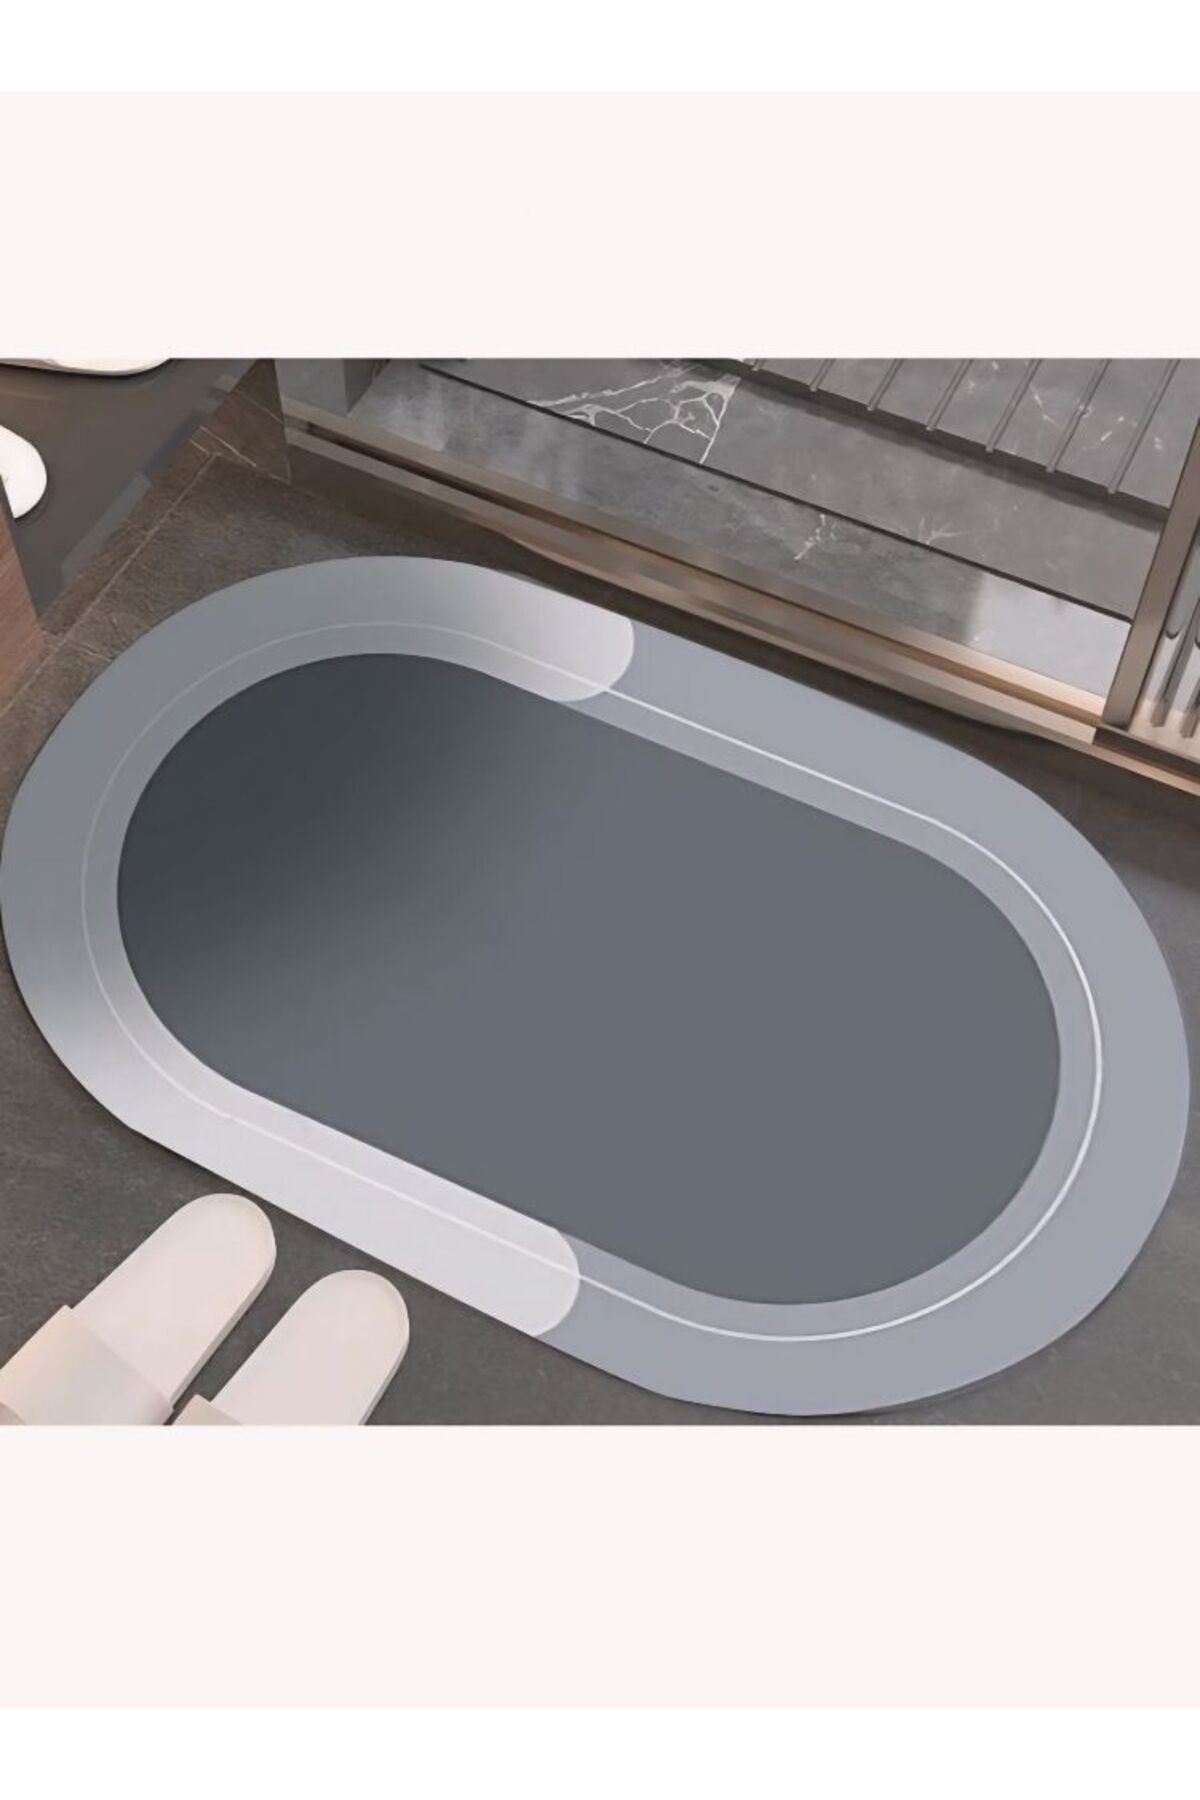 Mi-ÇA HOME Sihirli Süper Su Emici Banyo Ayak Paspası, 38*58 Cm Ölçü/ Kaymaz Tabanlı Oval Abdest Paspası